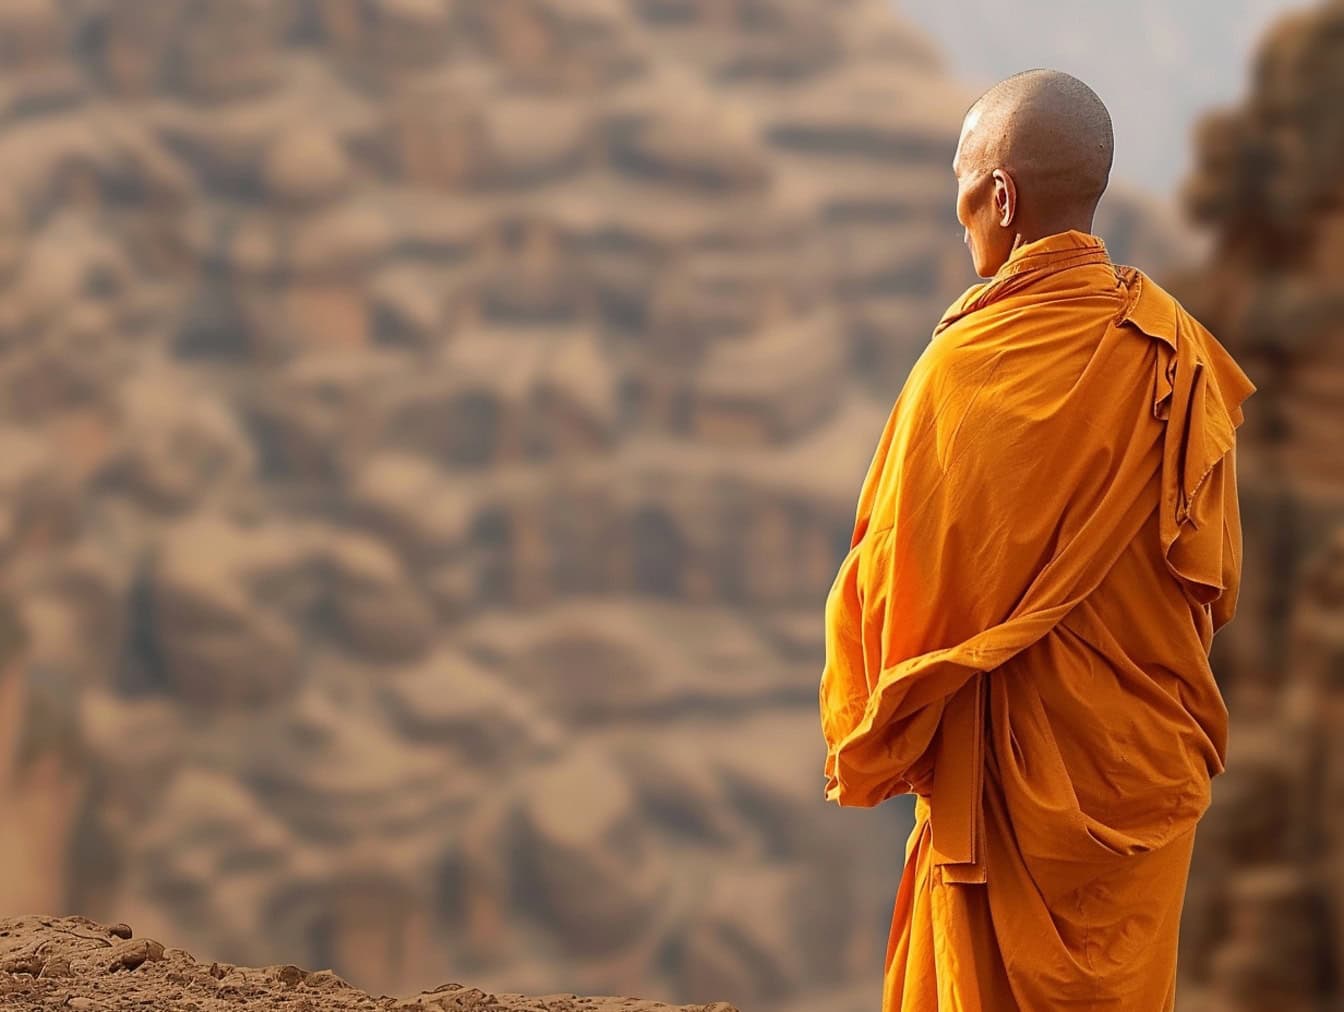 Budistički redovnik obrijane glave stoji okrenut leđima u pustinji odjeven u narančastu haljinu